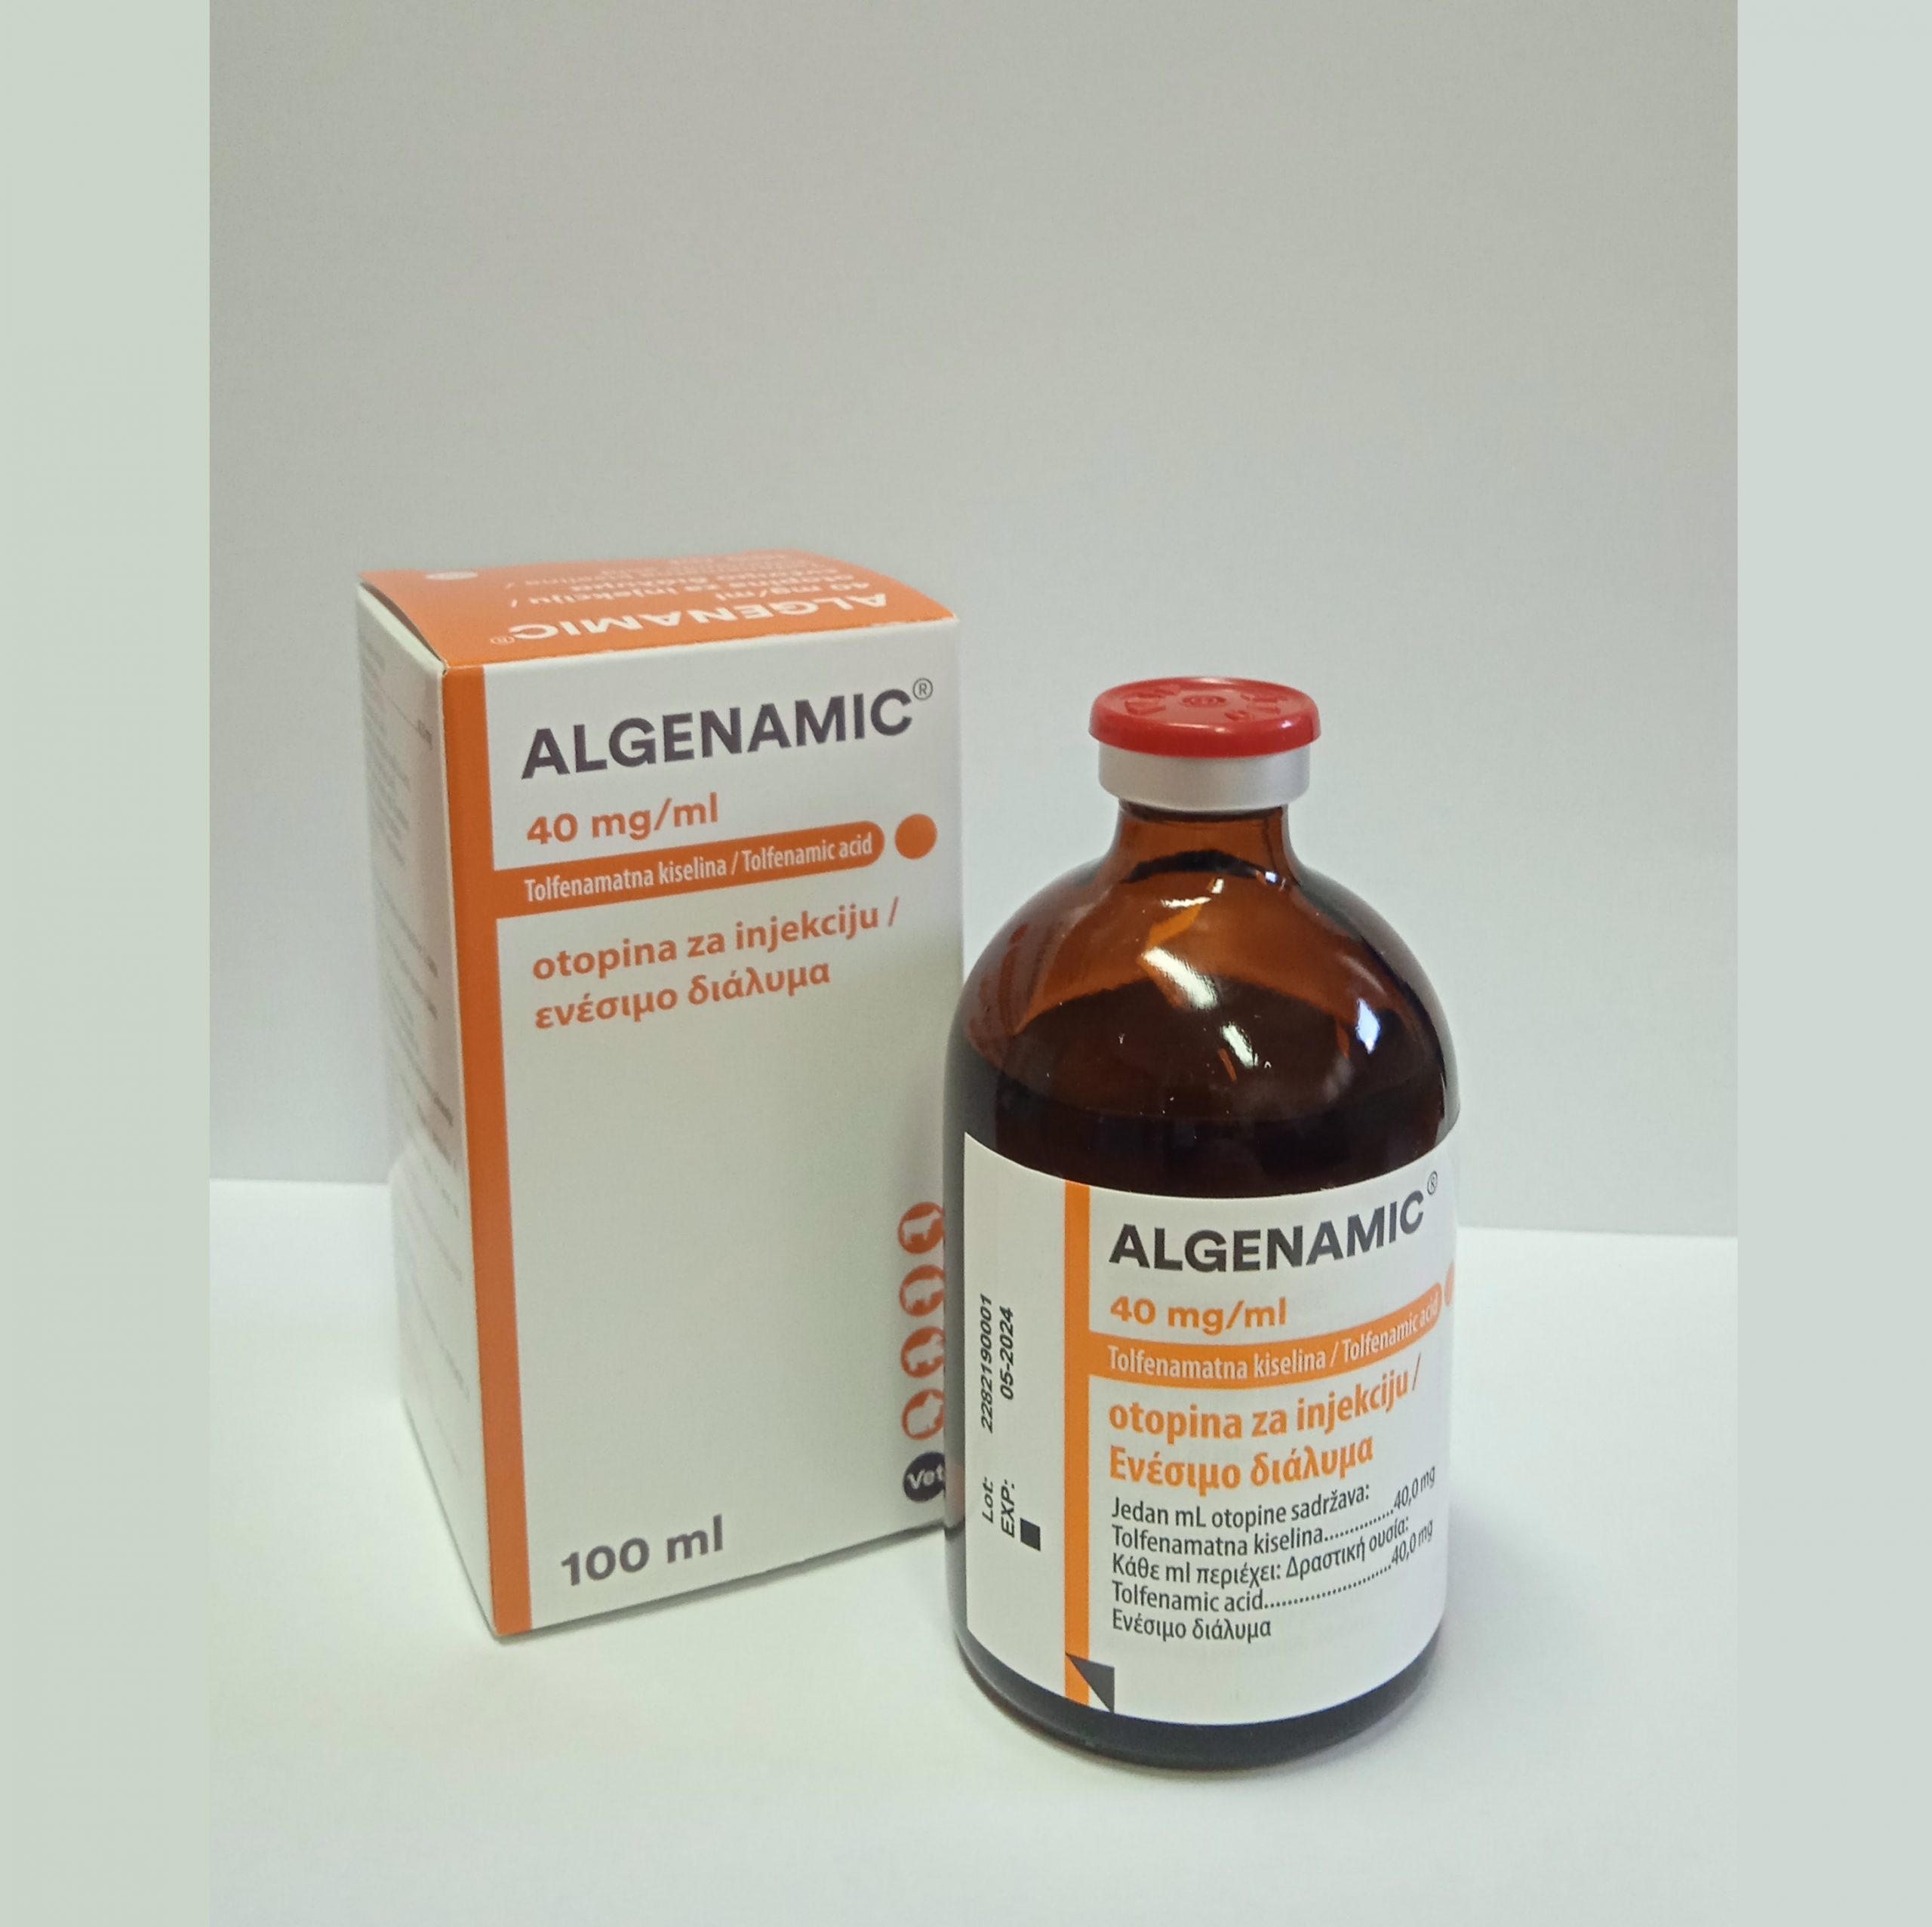 Algeanemic 2 scaled